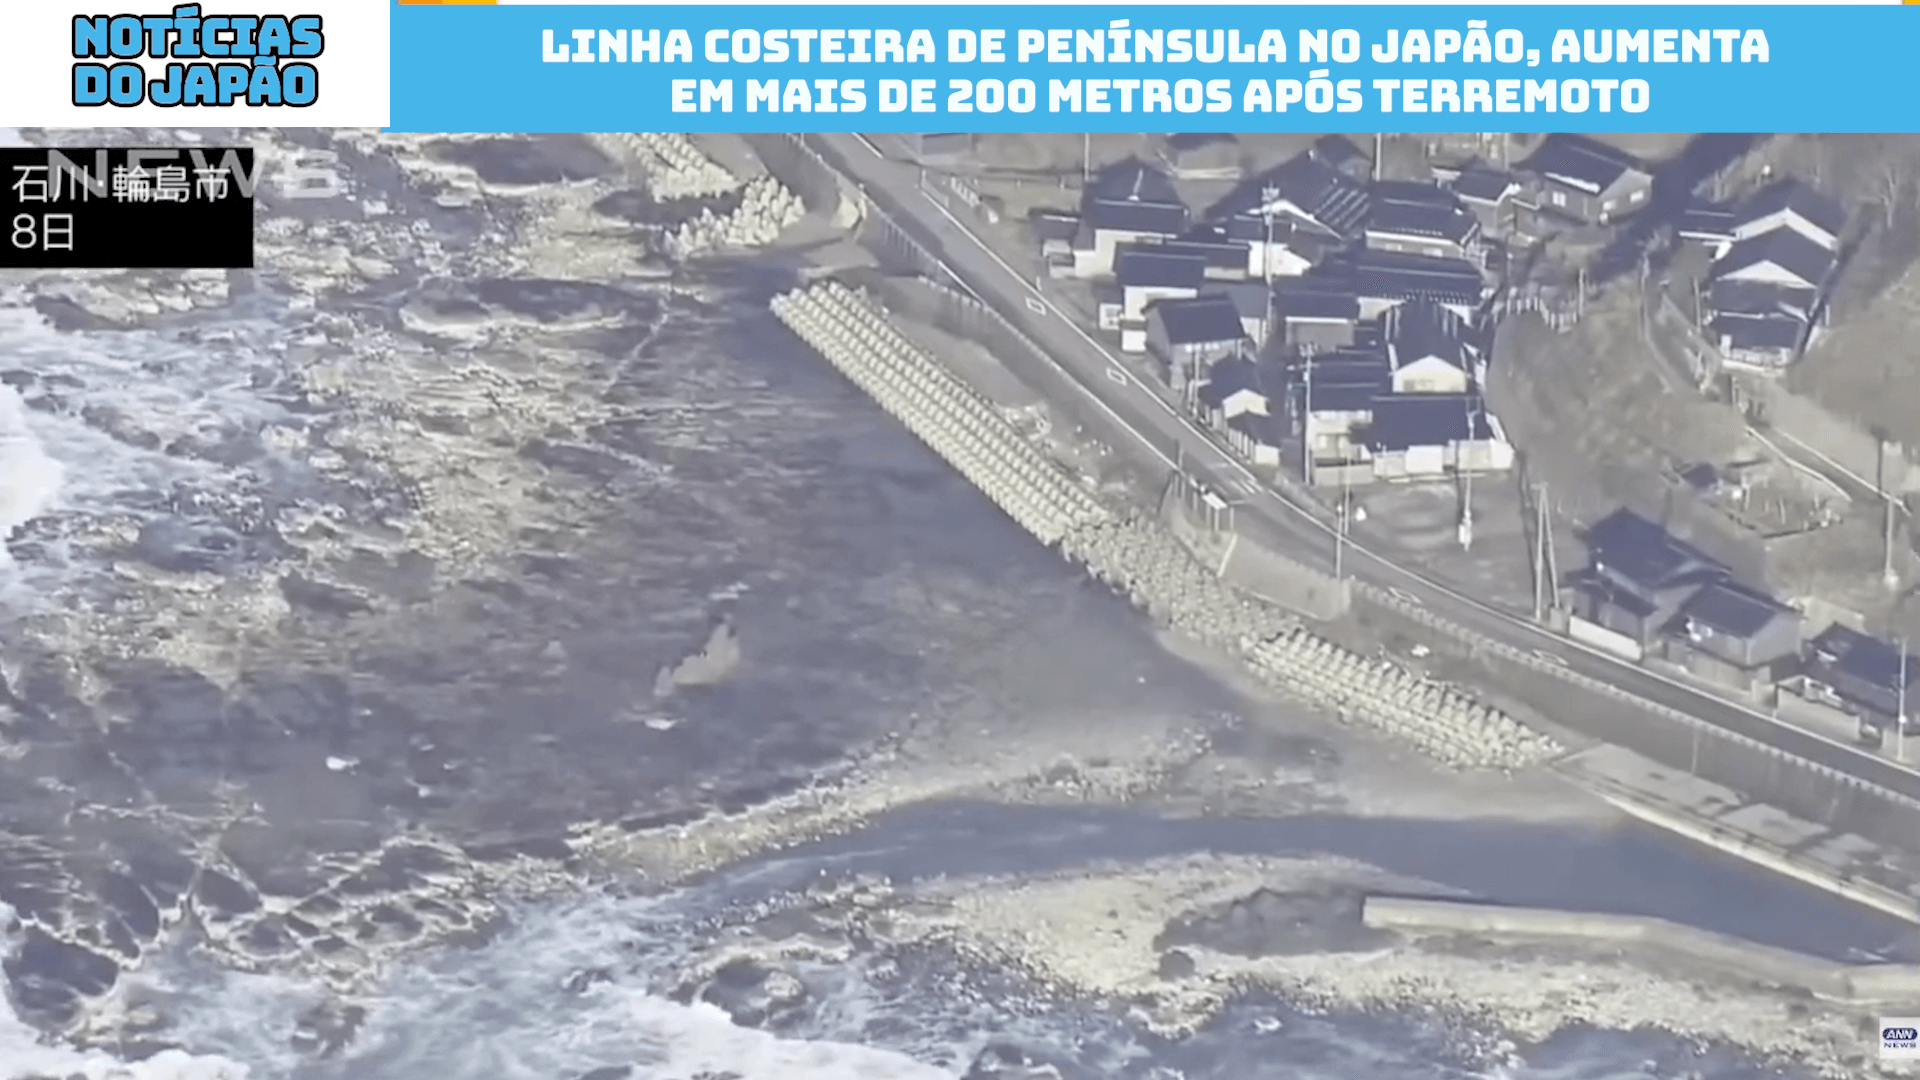 Linha costeira de Península no Japão, aumenta em mais de 200 metros após terremoto 